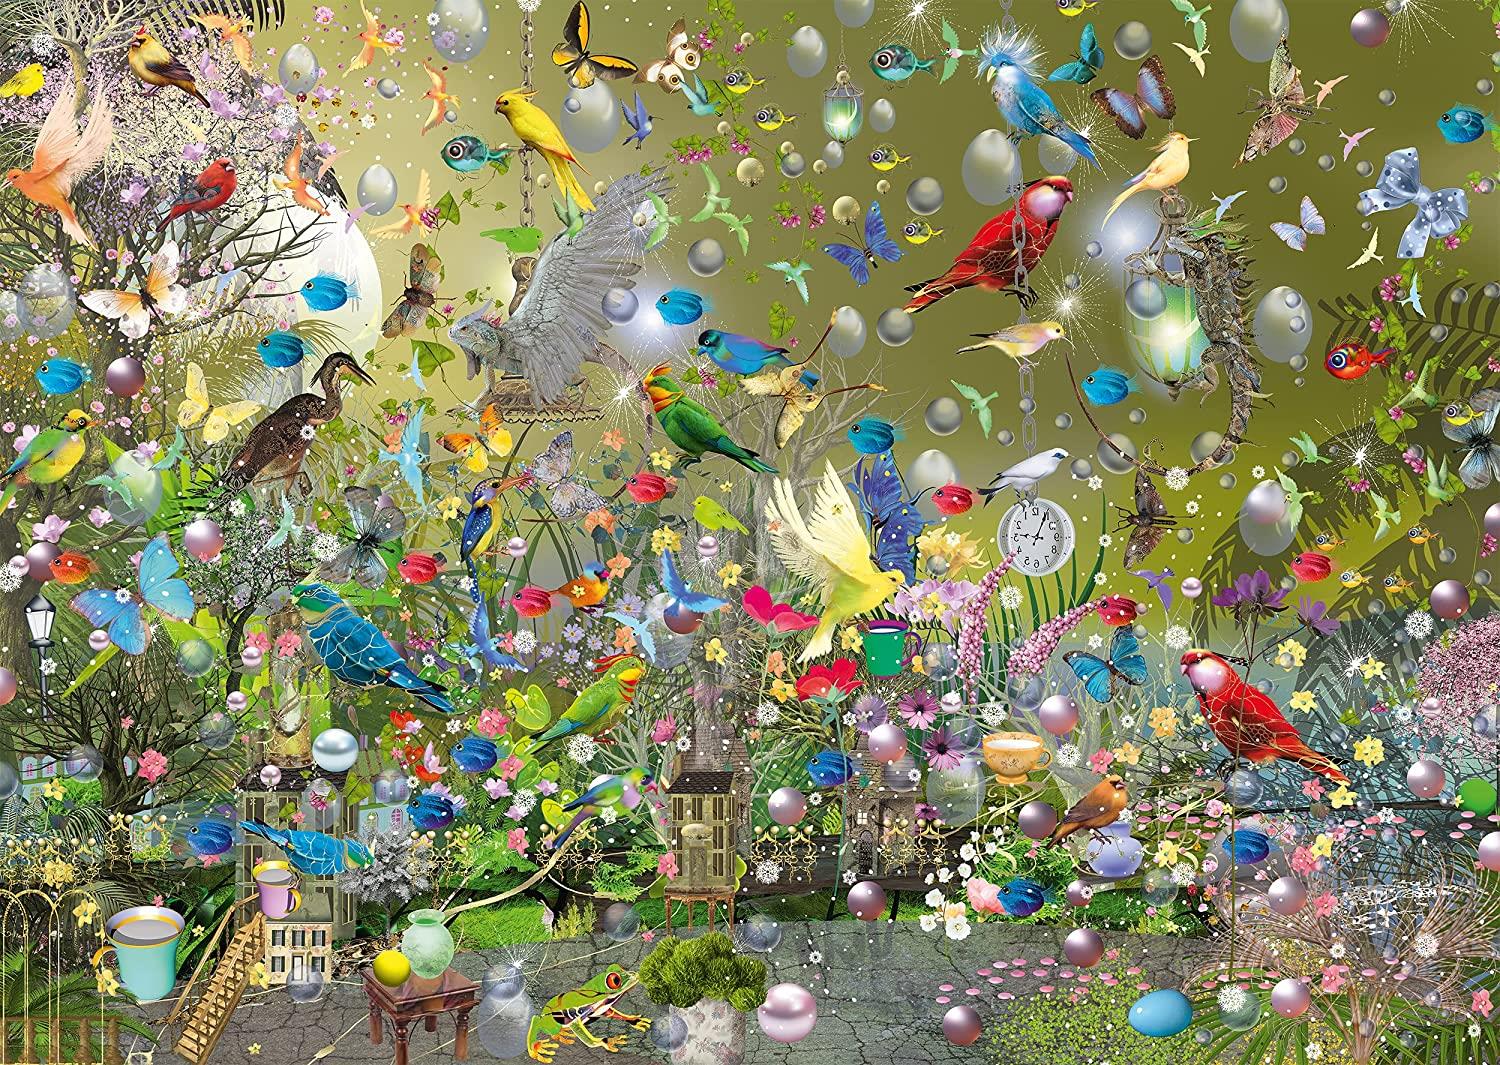 Schmidt Ilona Reny A Parrot Jungle  Jigsaw Puzzle (1000 Pieces)